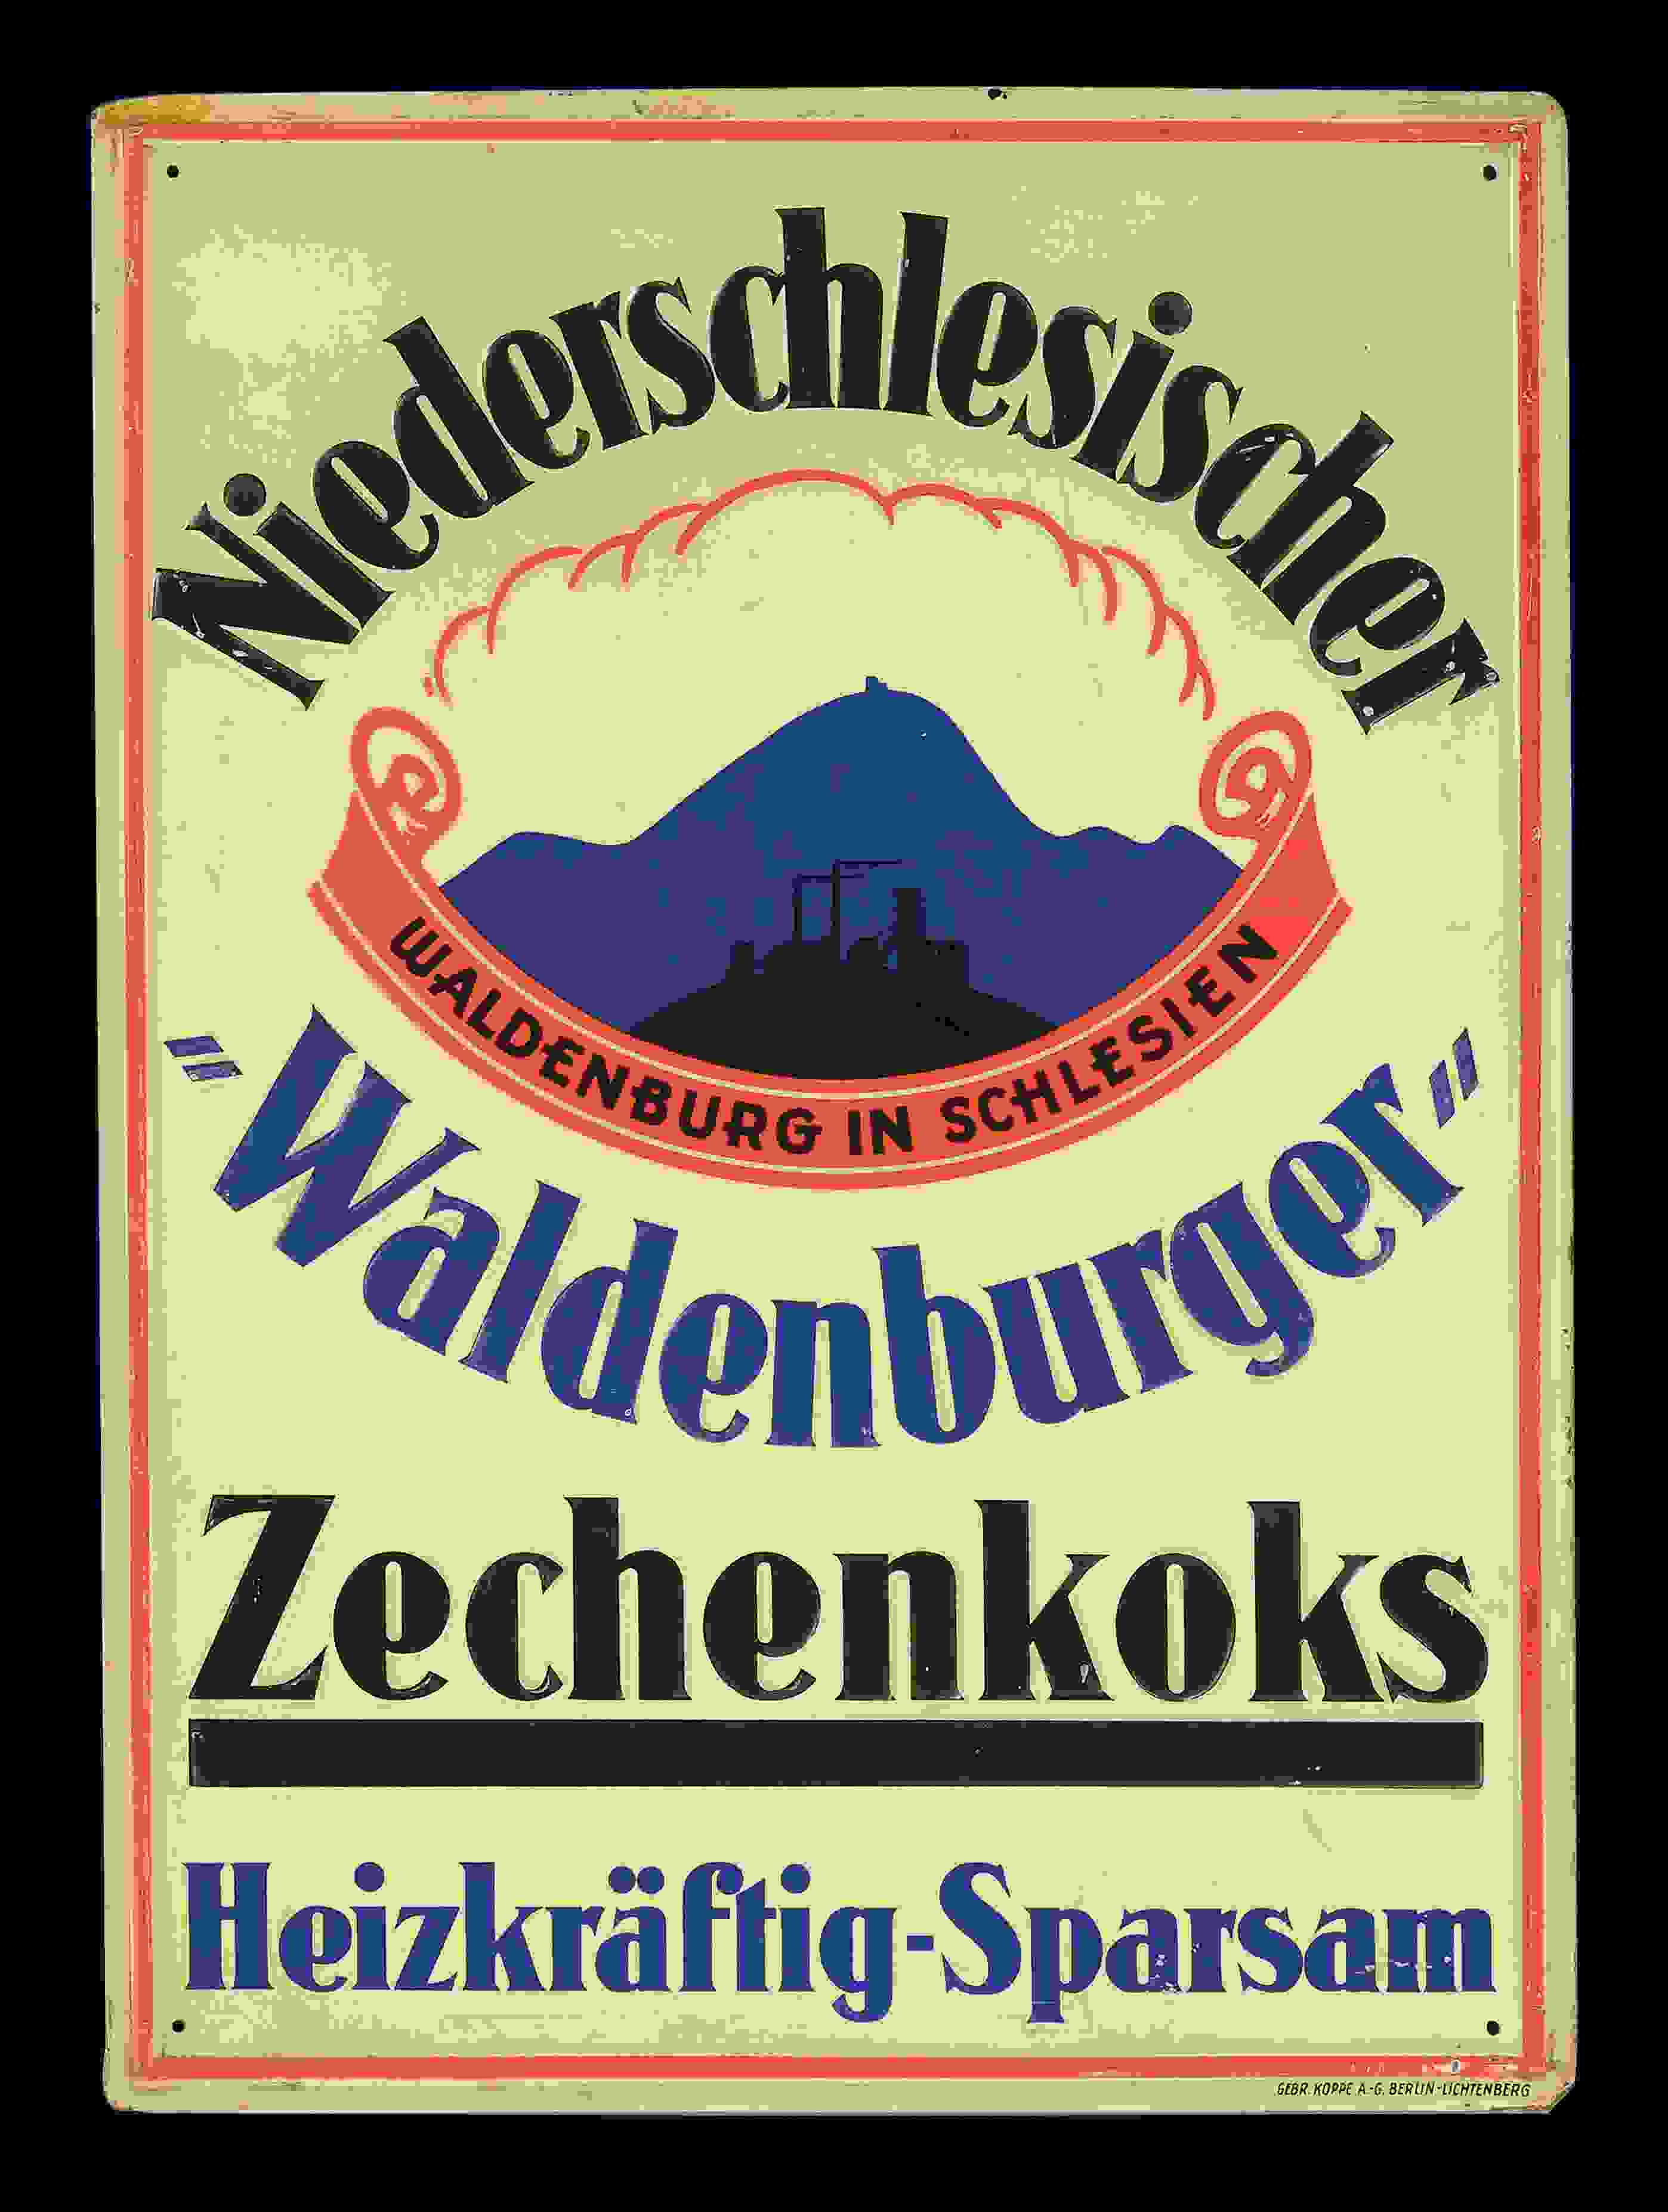 Niederschlesischer Waldenburger Zechenkoks 